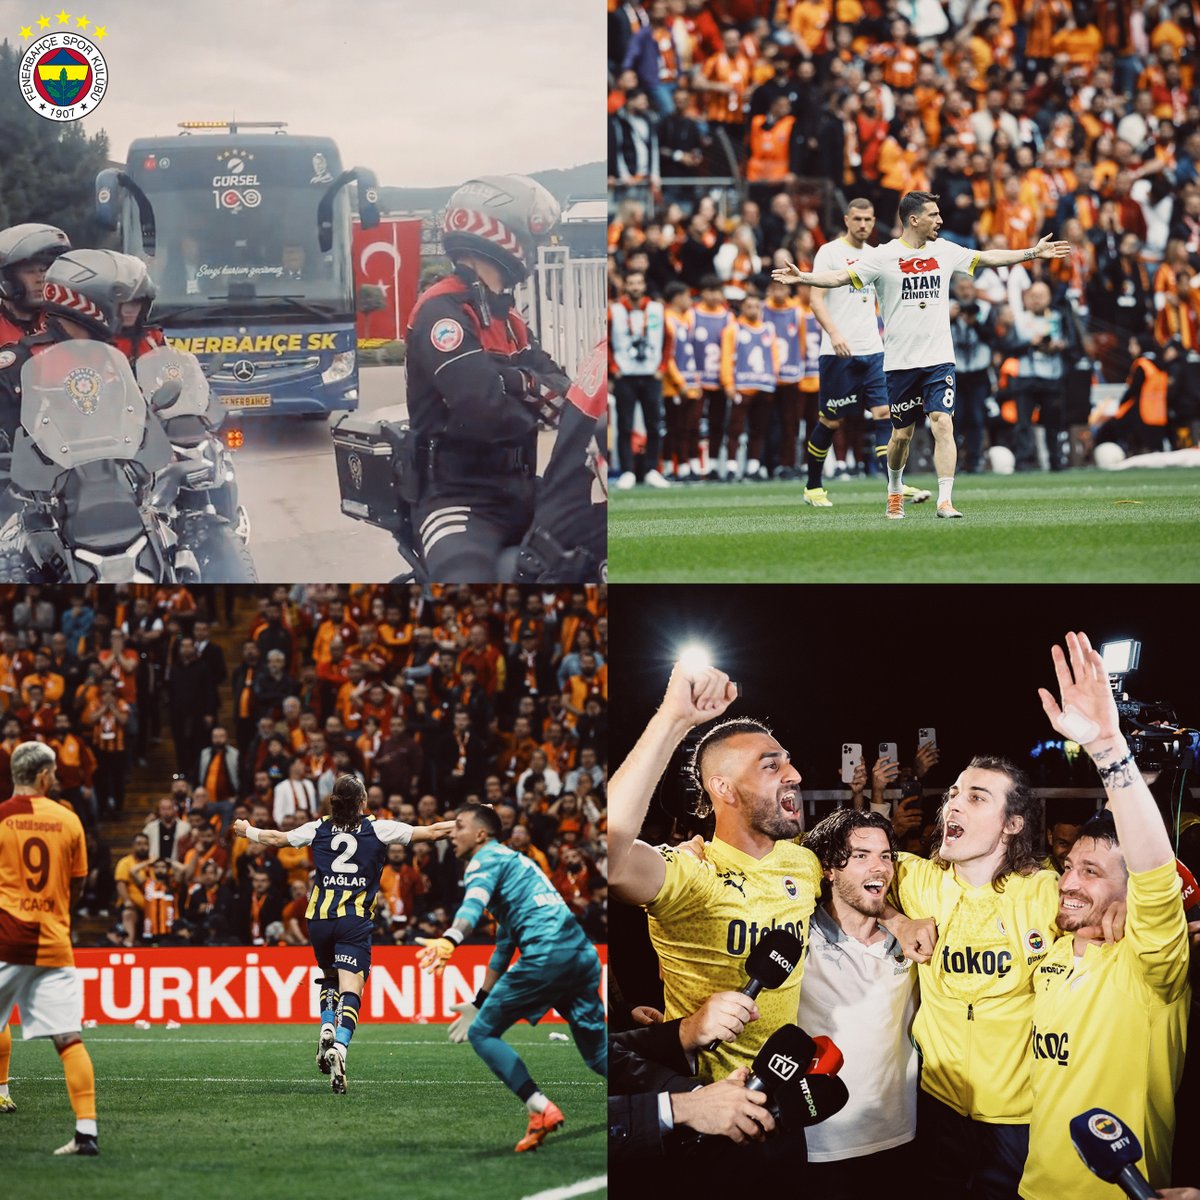 🚎 Geldik 👀 Gördük 💪Yendik 👋 Döndük İyi geceler Büyük Fenerbahçe Taraftarı! 🙌